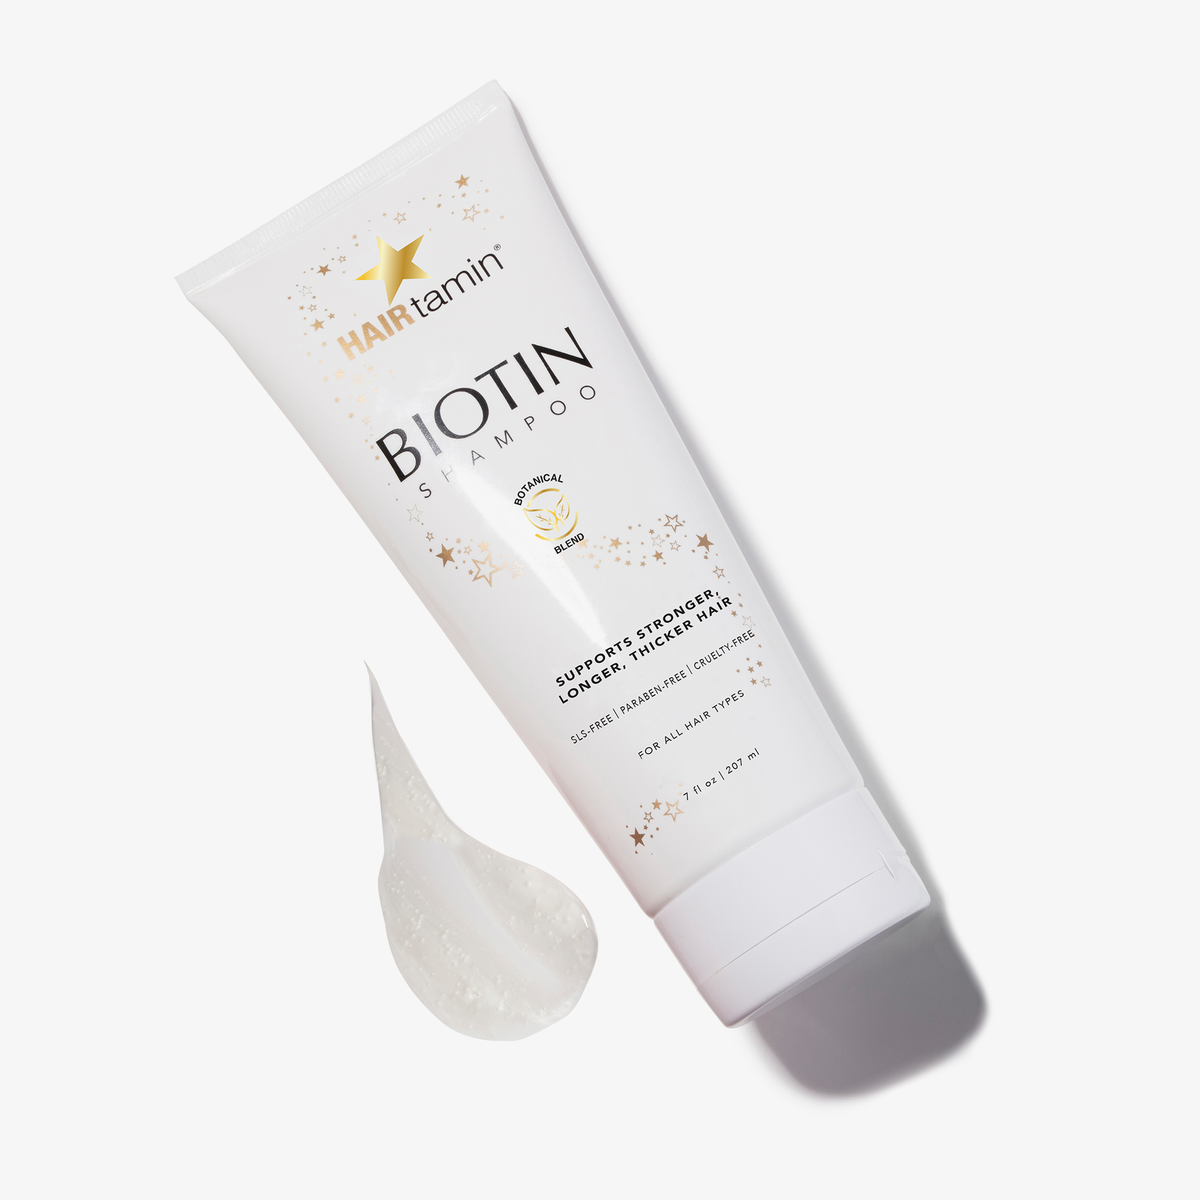 Eine Packung Biotin Shampoo von HAIRtamin vor weißem Hintergrund neben einem Fleck des Shampoos